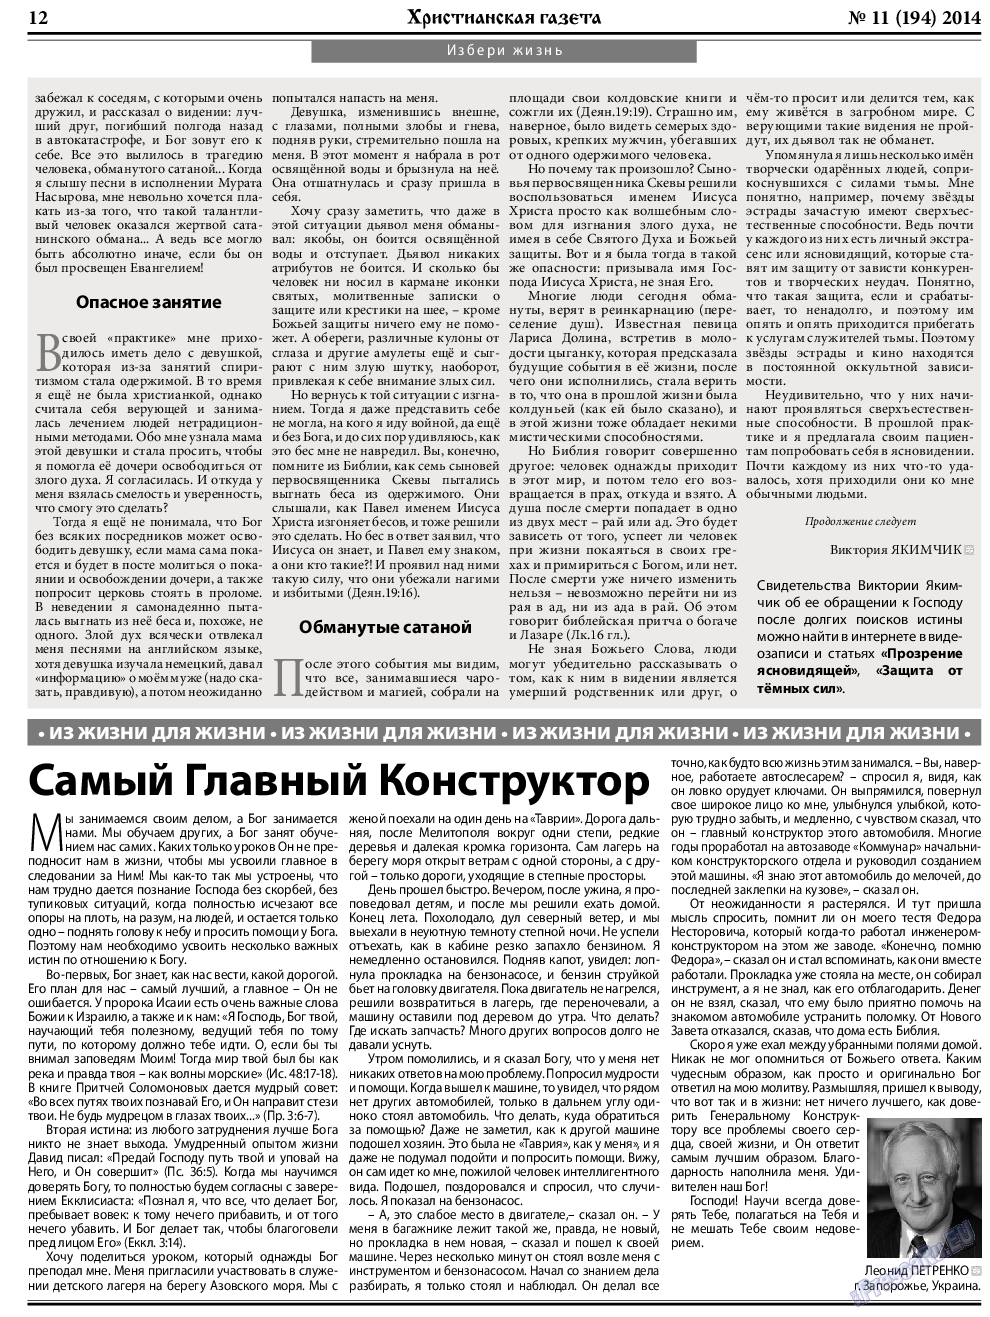 Христианская газета, газета. 2014 №11 стр.12